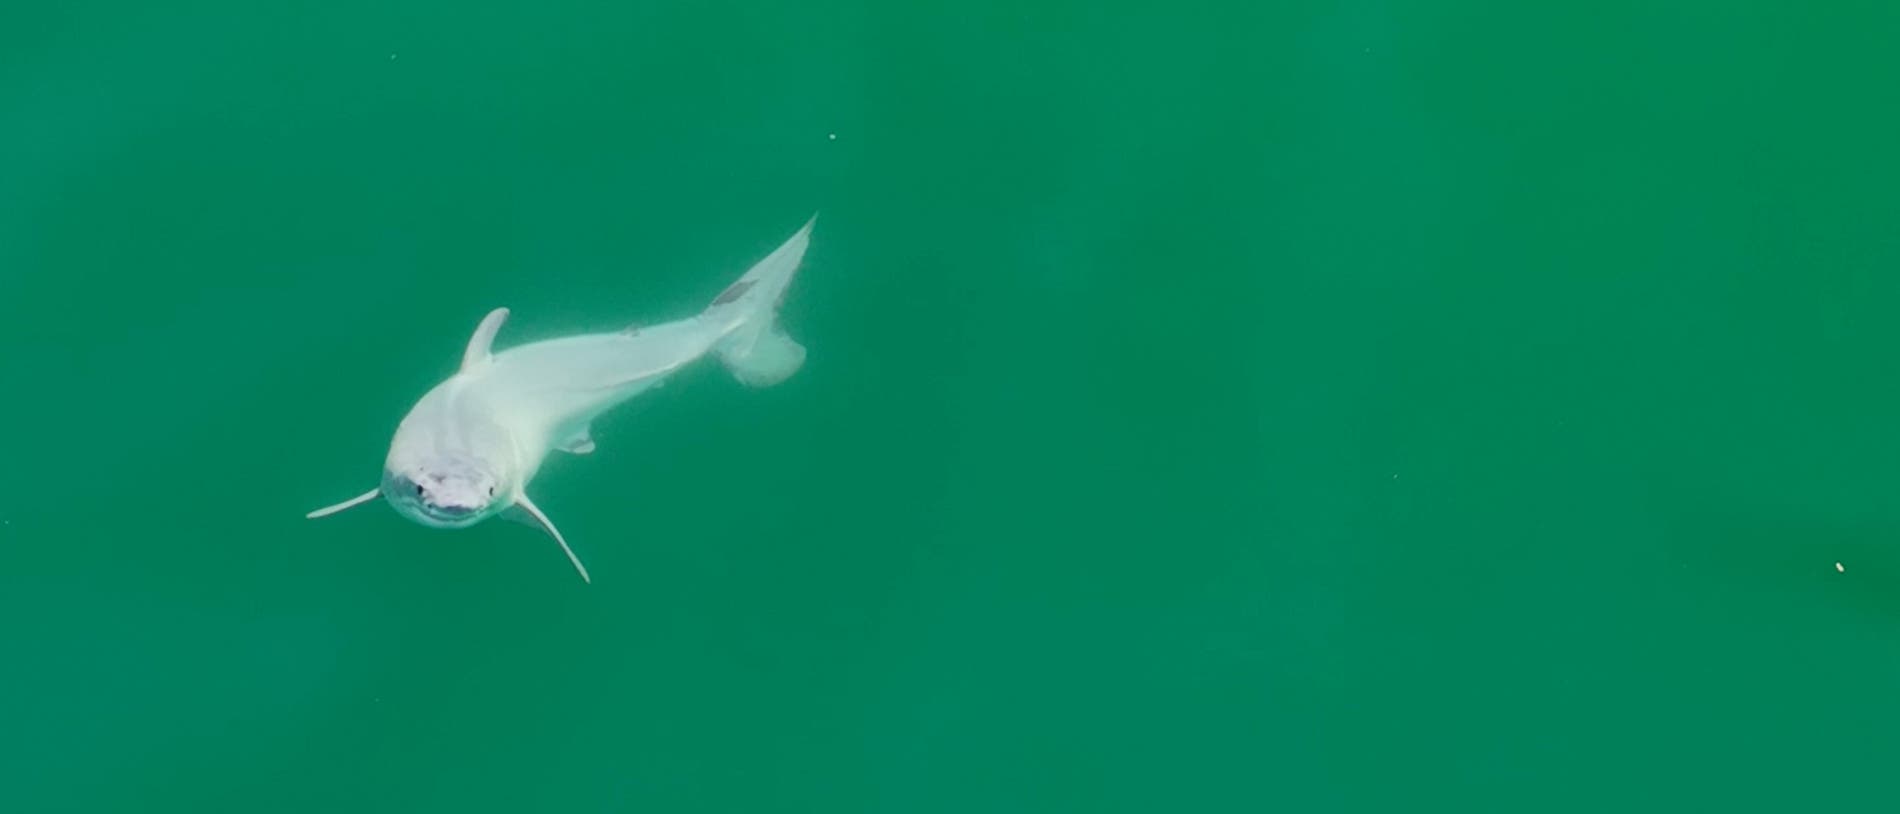 Bild eines Hais im grünen Meer.